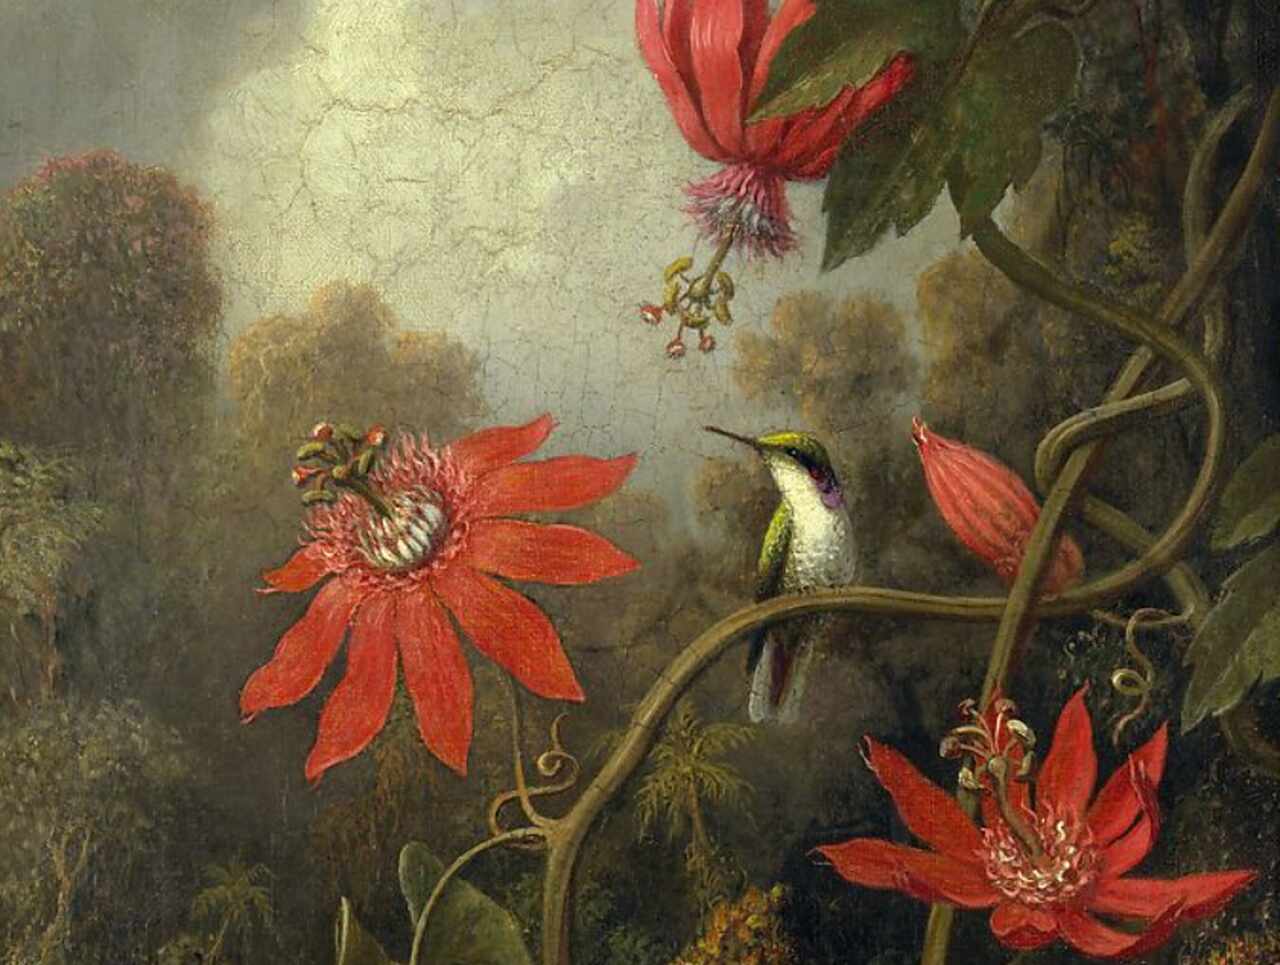 Pintura "Hummingbird and Passionflowers", de Martin Johnson Heade. Ilustrando o poema "O Coração", de Castro Alves, por justamente ambas envolverem um colibri.